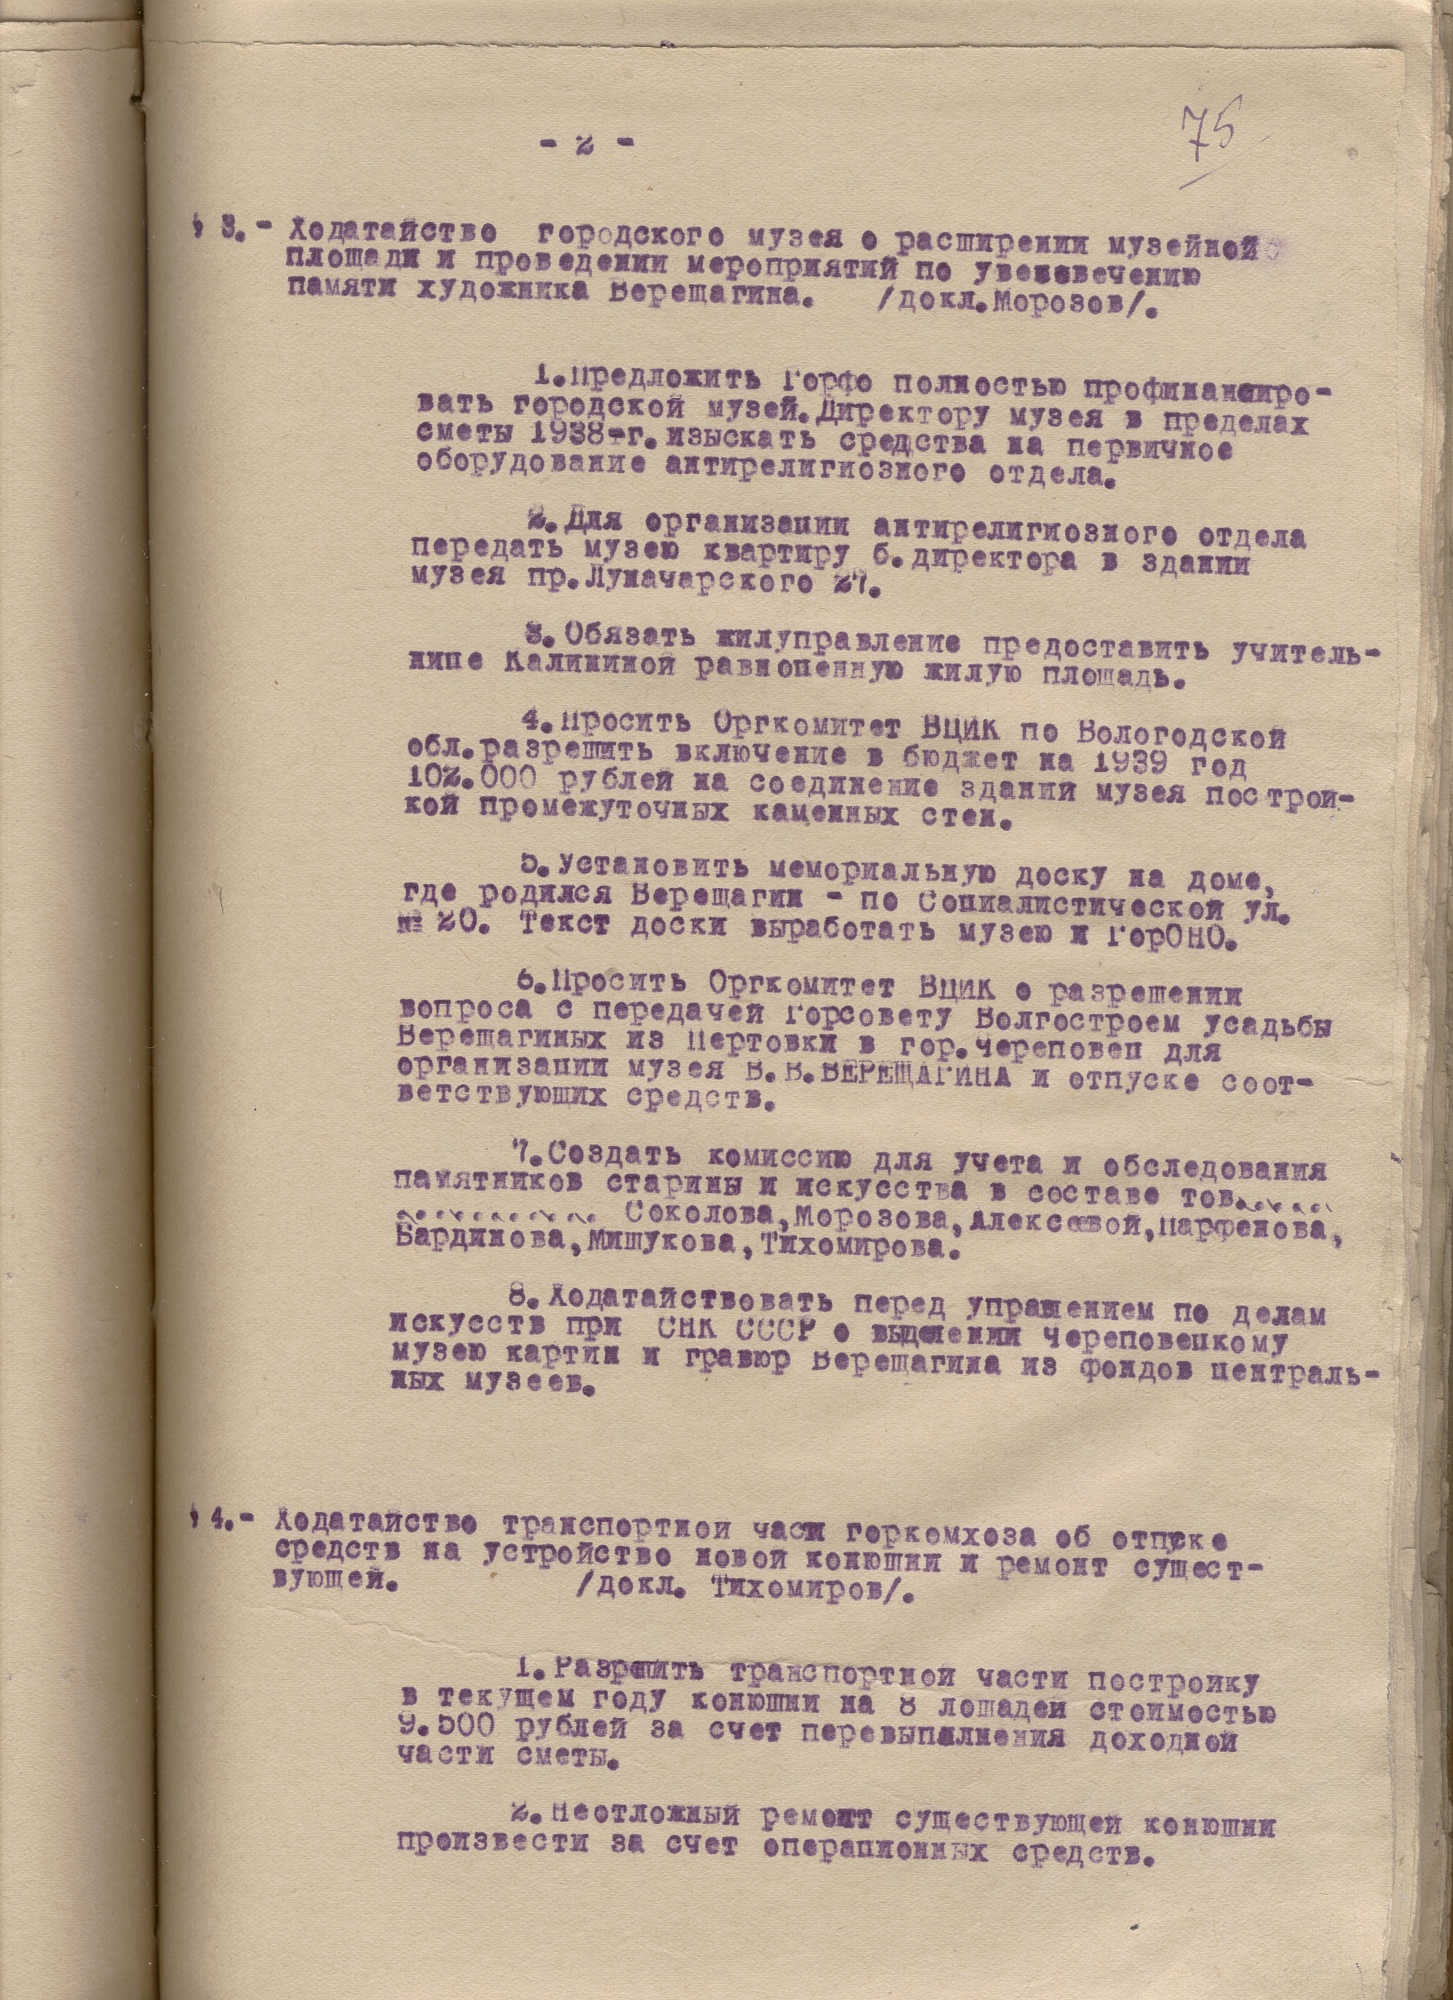 Протокол заседания Президиума Череповецкого городского Совета рабочих, крестьянских и красноармейских депутатов от 25 октября 1938 года № 47 § 3 